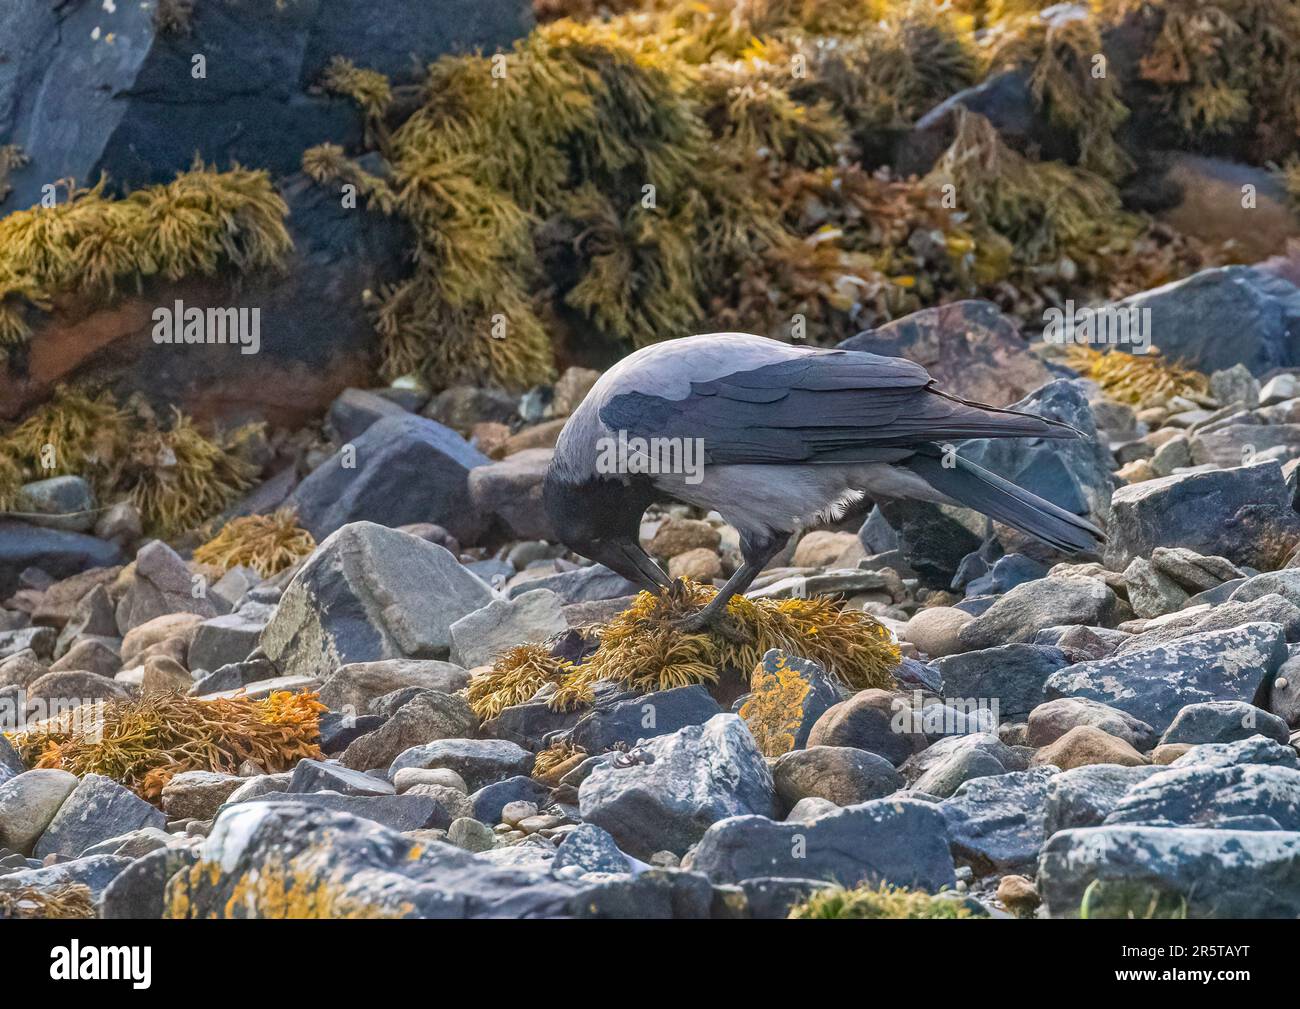 Eine clevere Kapuzenkrähe ( Corvus cornix), die Regale öffnet, indem sie sie zertrümmert und auf den Felsen aufbricht. Clifden Bay, Irland Stockfoto